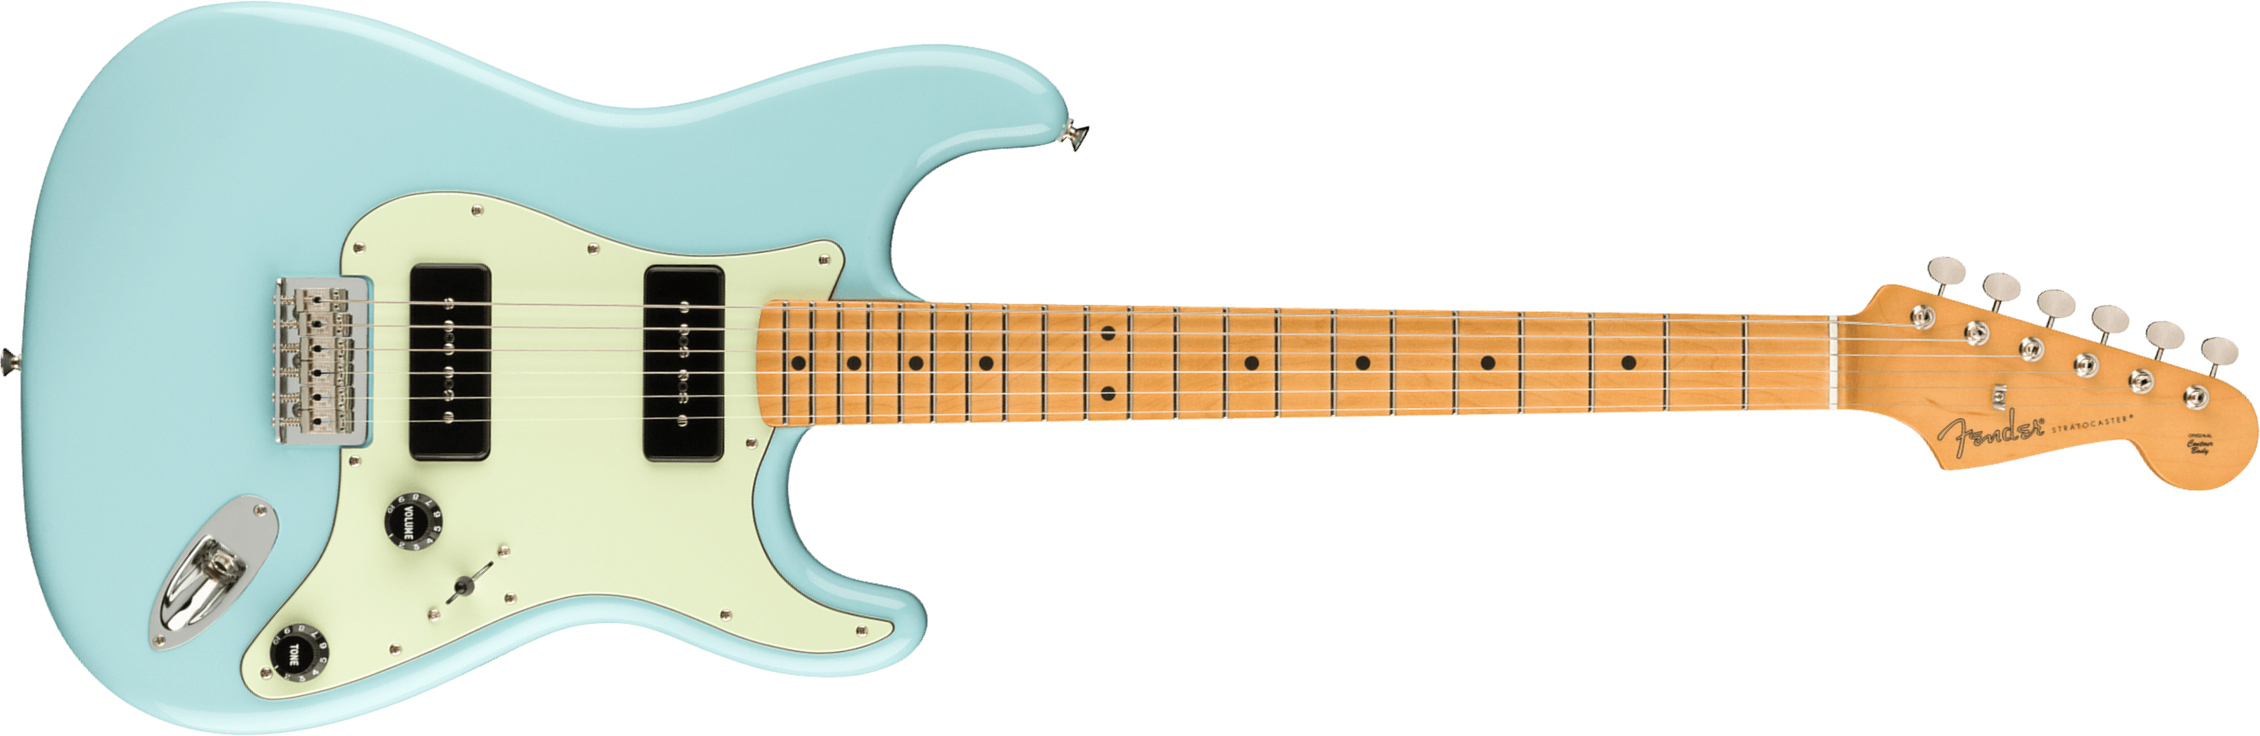 Fender Strat Noventa Mex Ss Ht Mn +housse - Daphne Blue - Elektrische gitaar in Str-vorm - Main picture